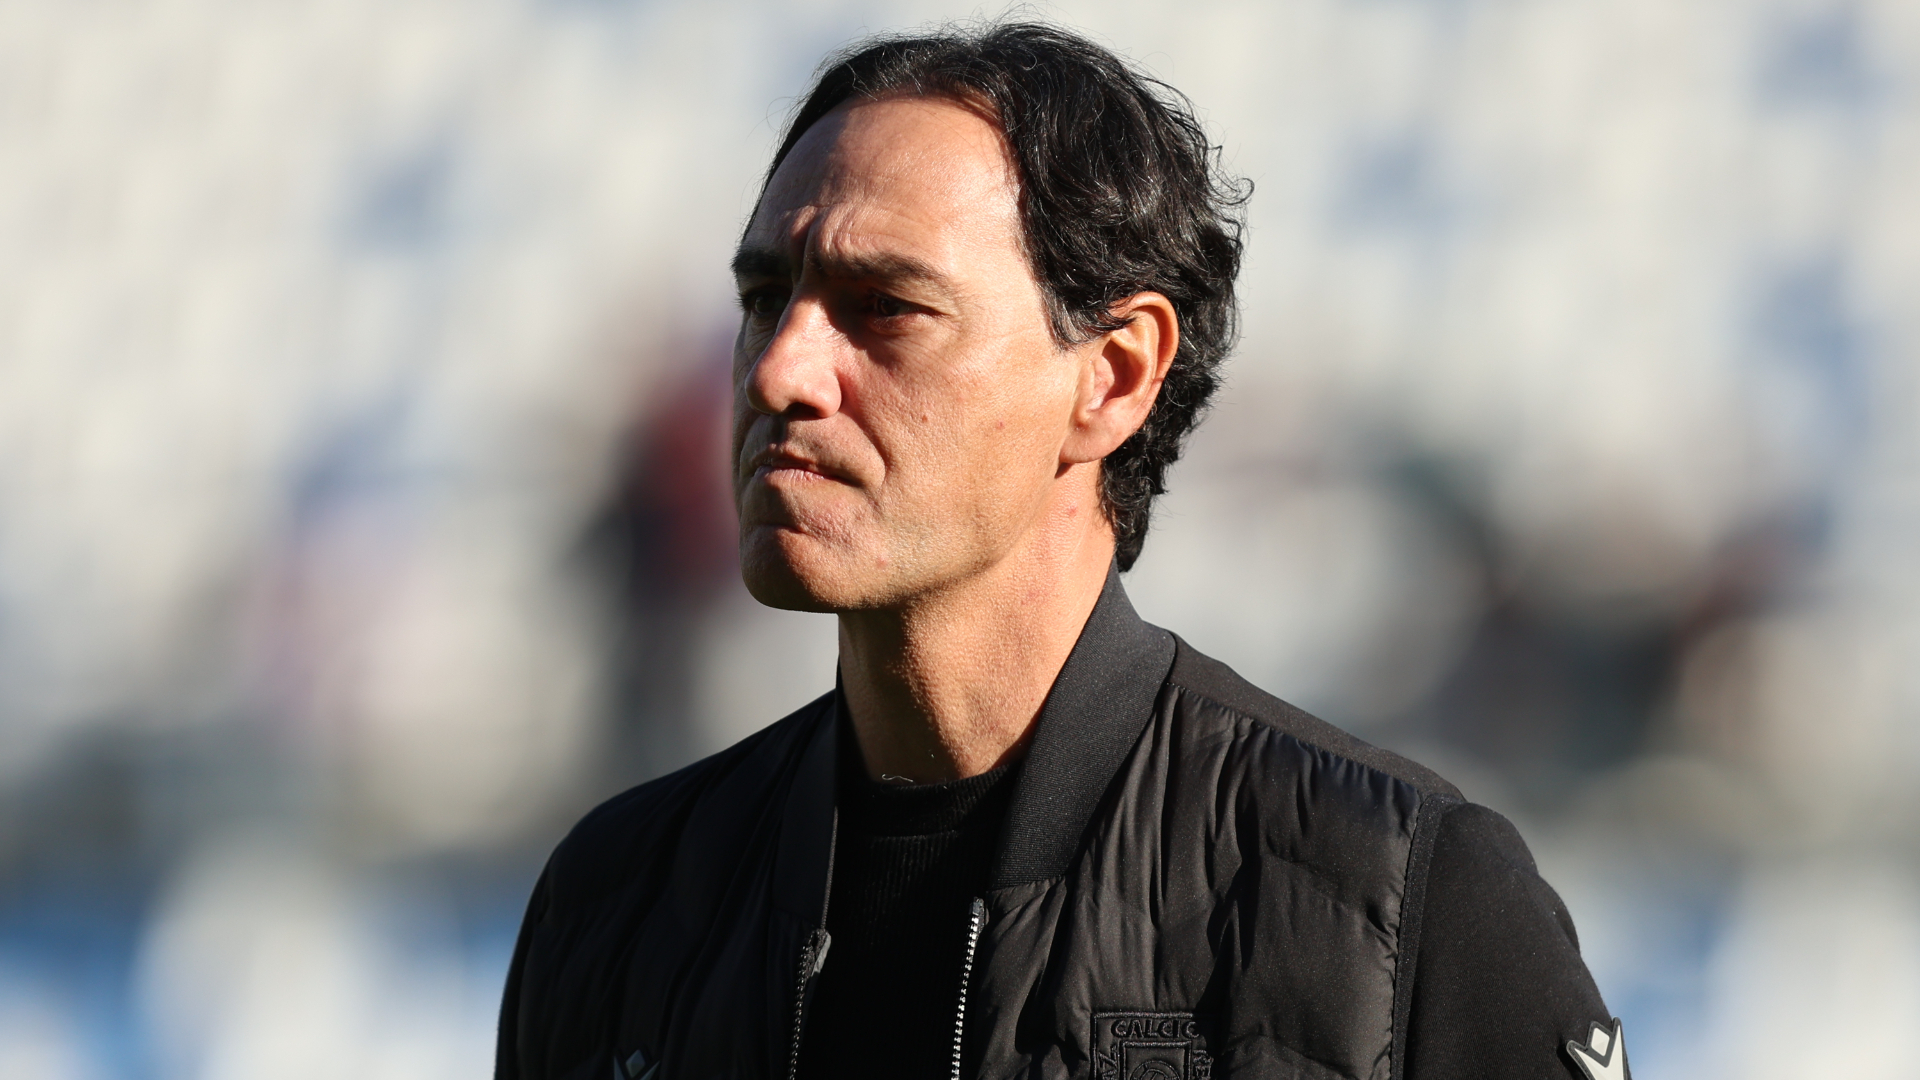 Nesta joins Monza as coach